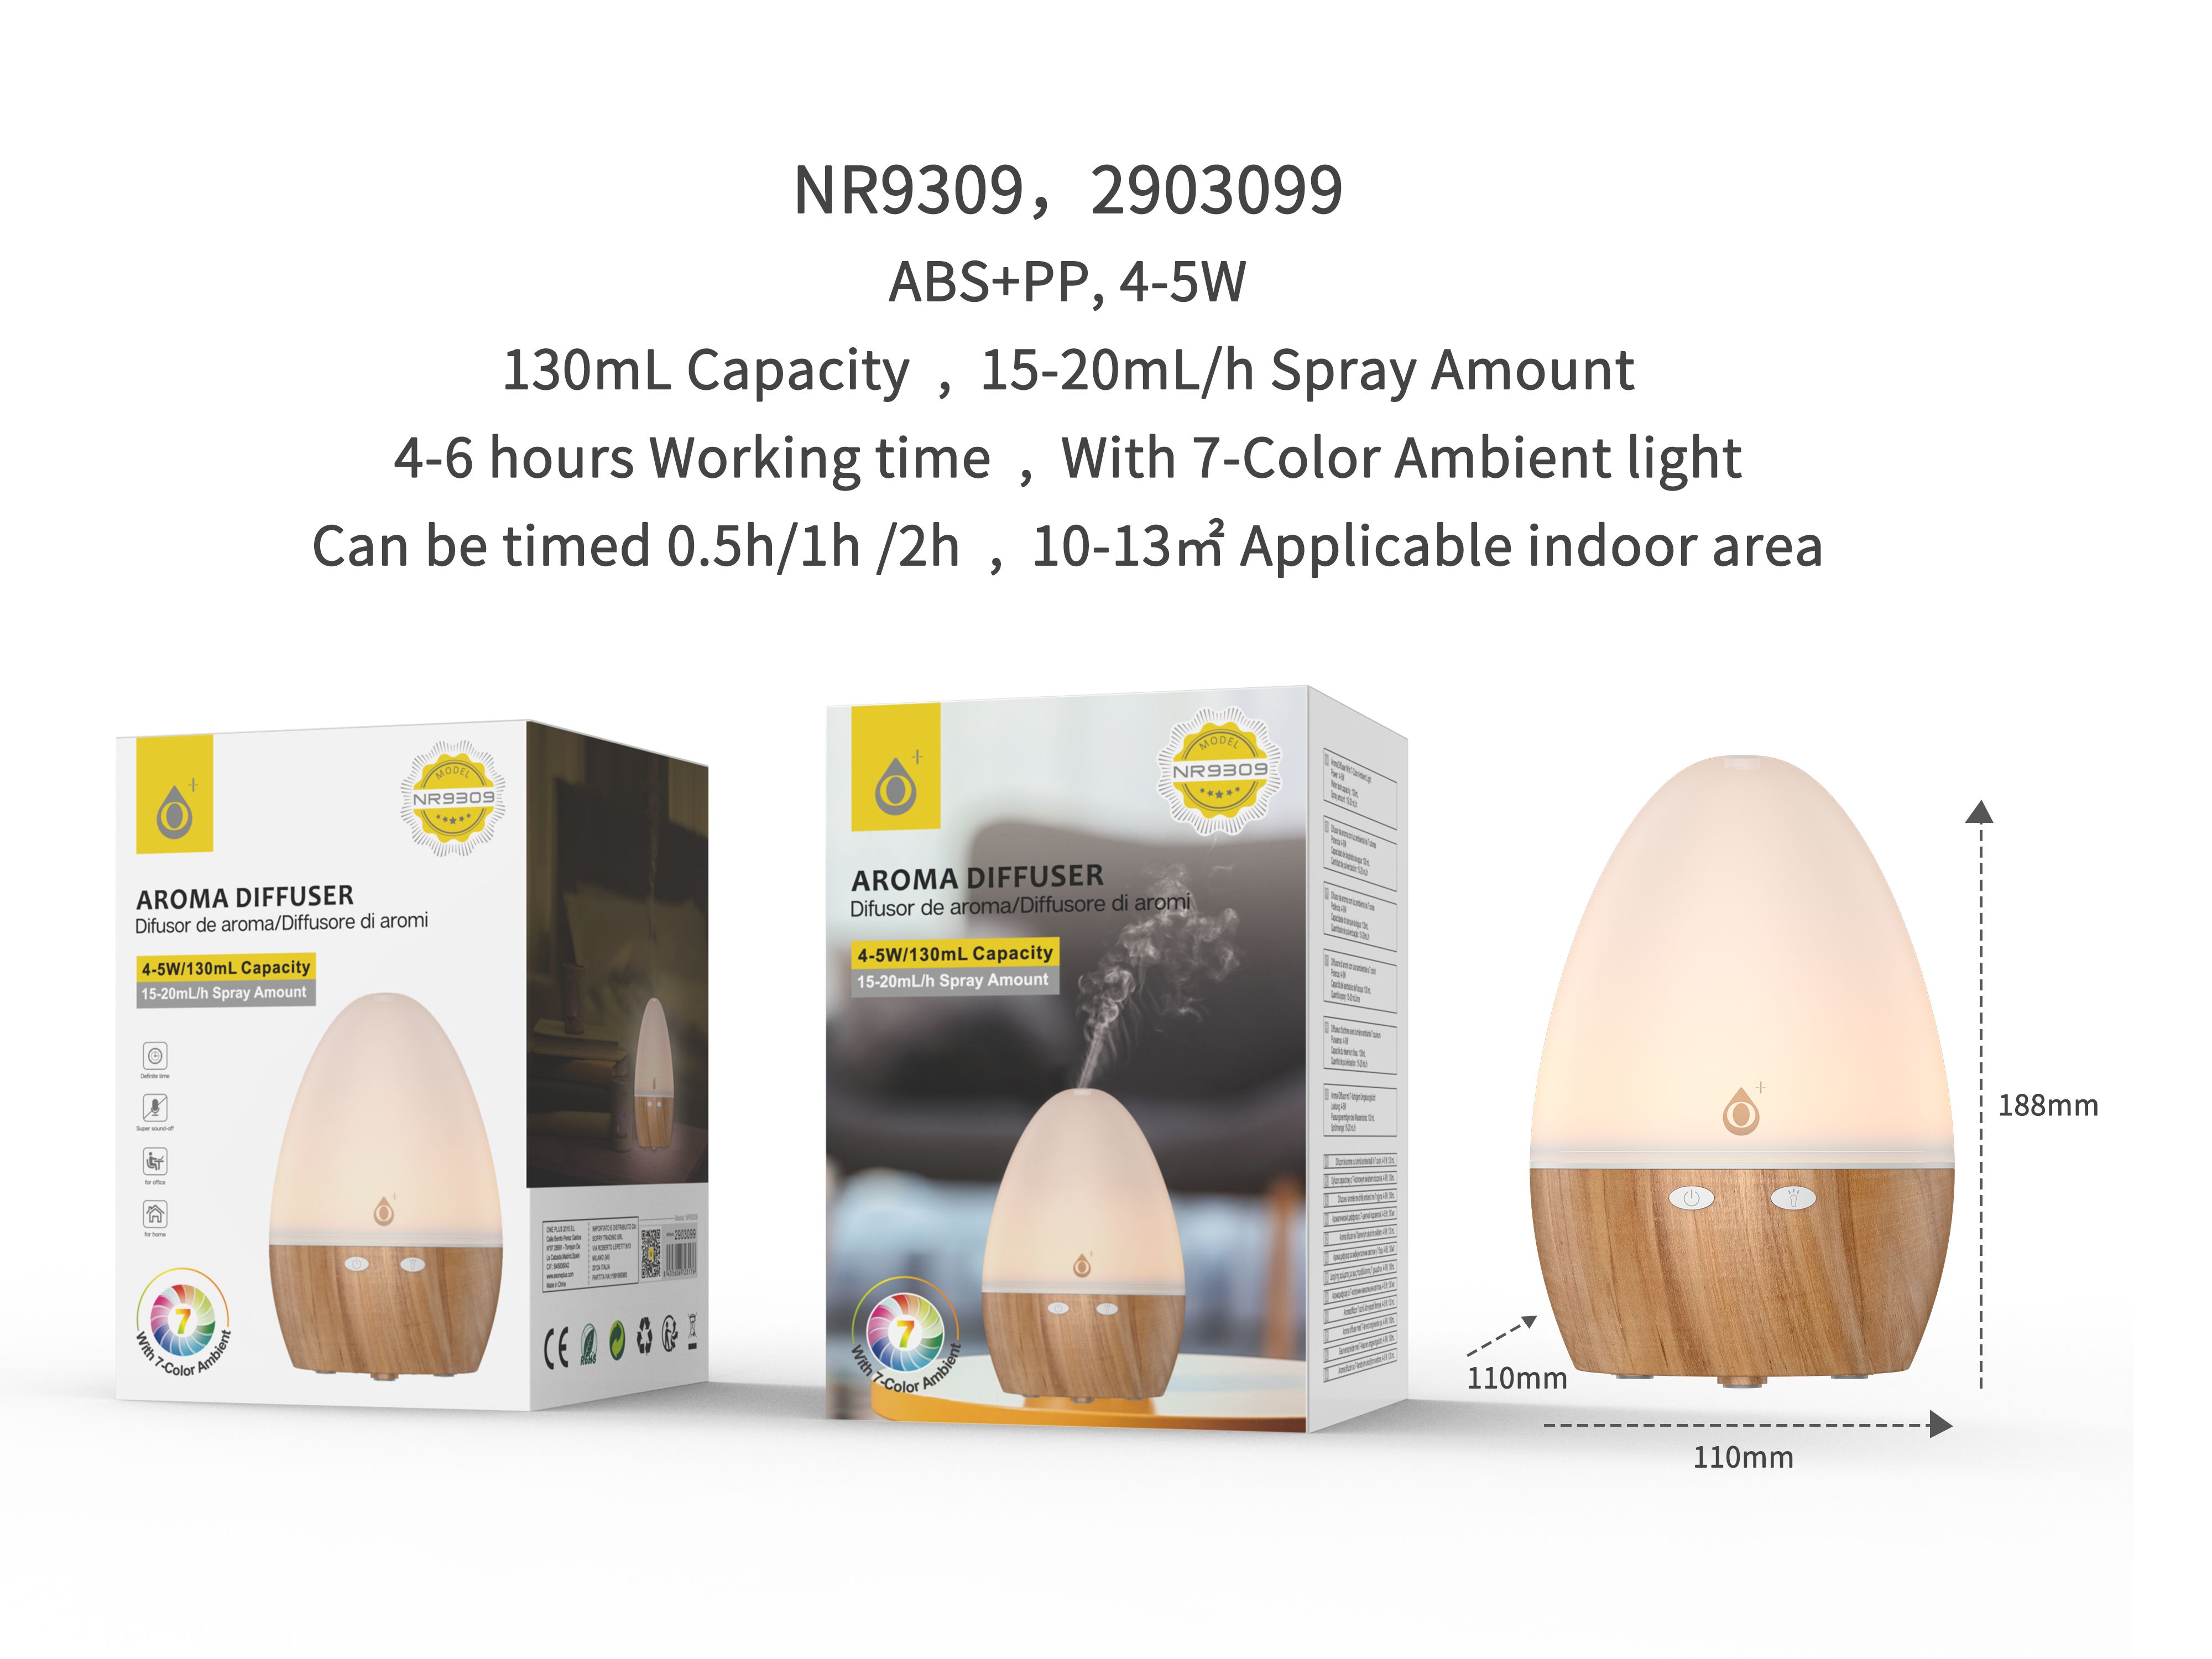 NR9309 MA Difusor  Aroma Air con Luz Ambiental 7 color ,  Temporizador hasta 2 Horas,Capacidad 130mL